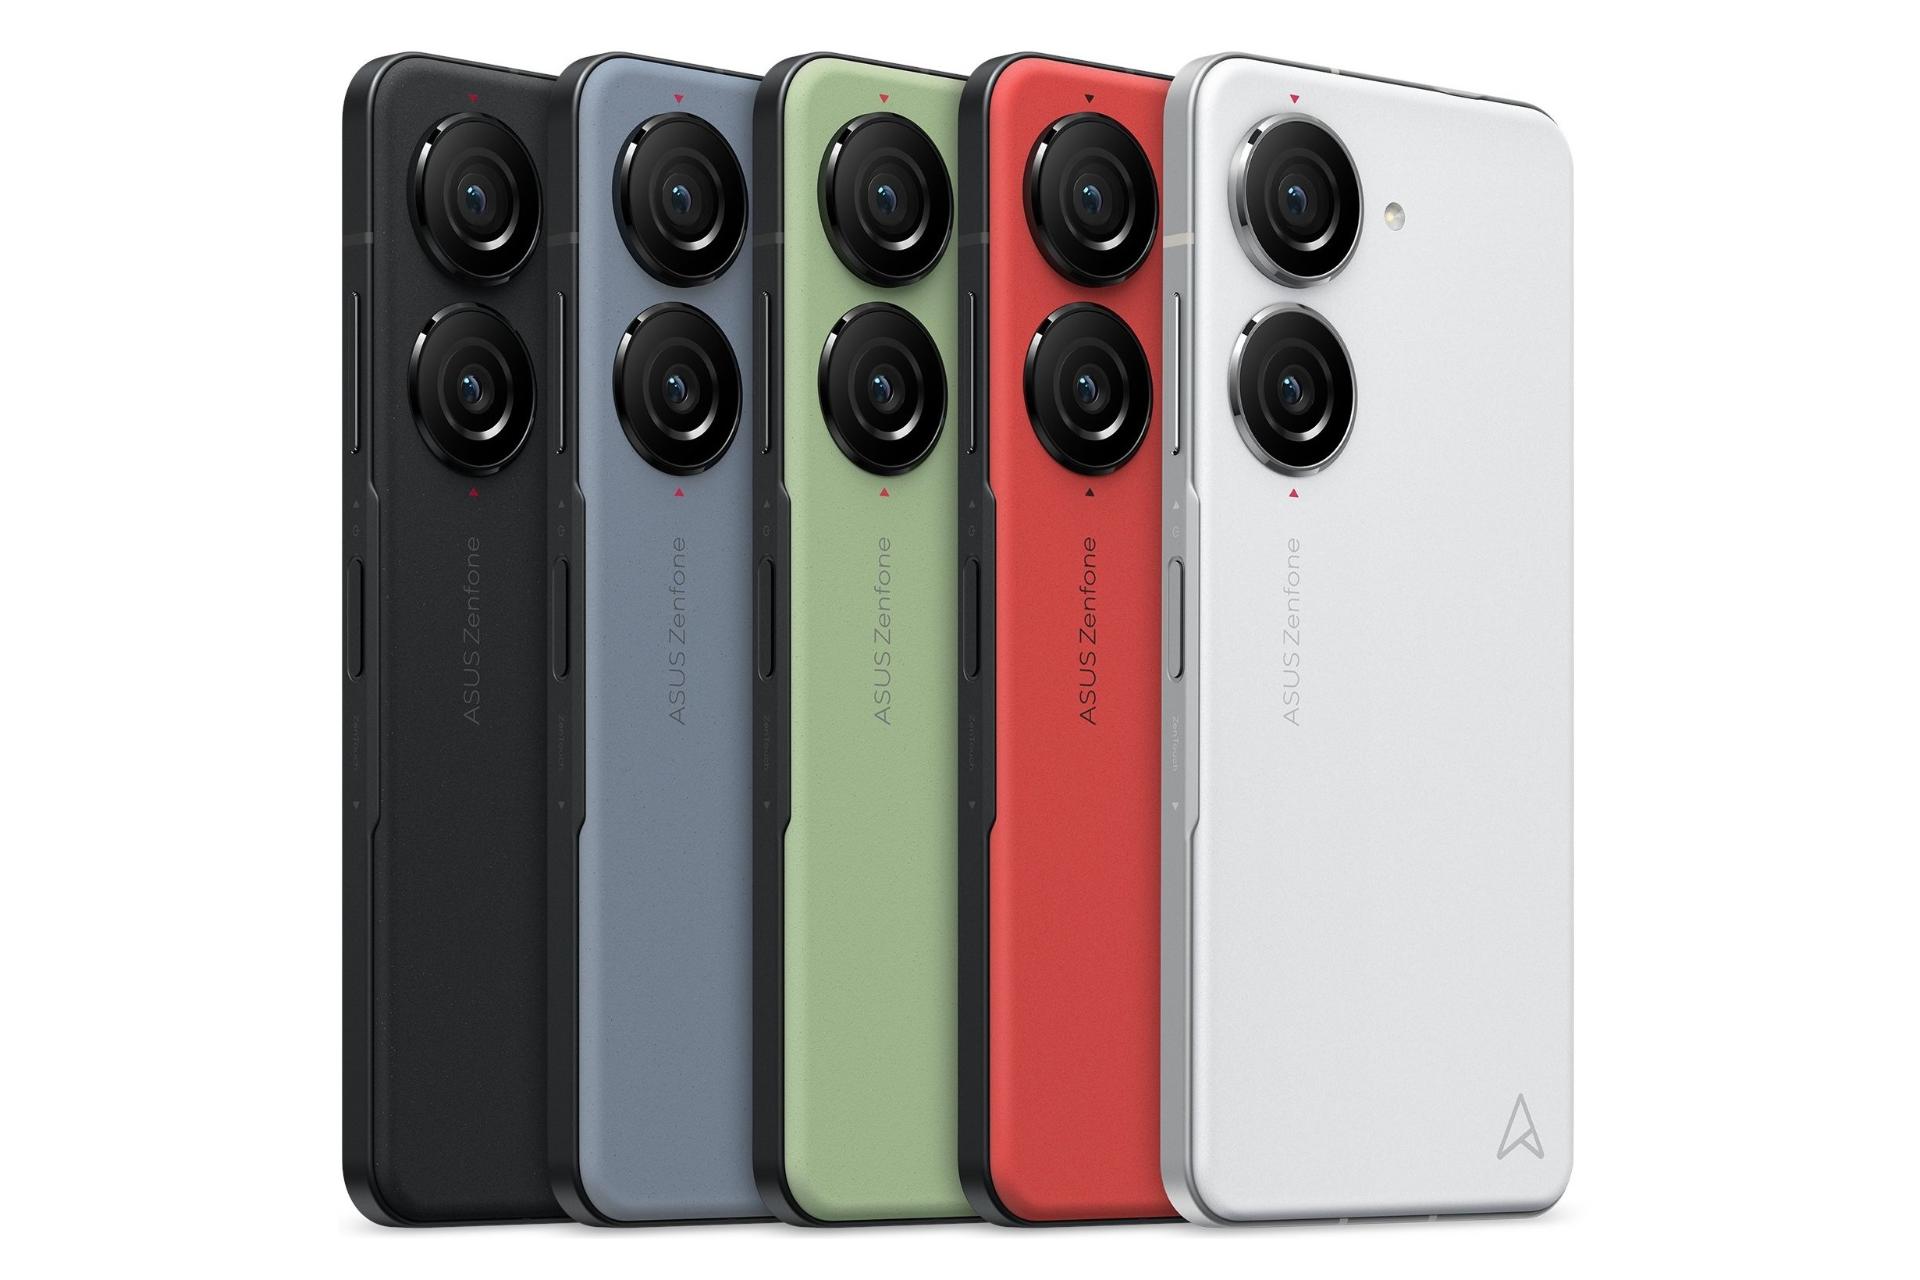 رنگ های مختلف پنل پشت گوشی موبایل ذن فون 10 ایسوس / ASUS Zenfone 10